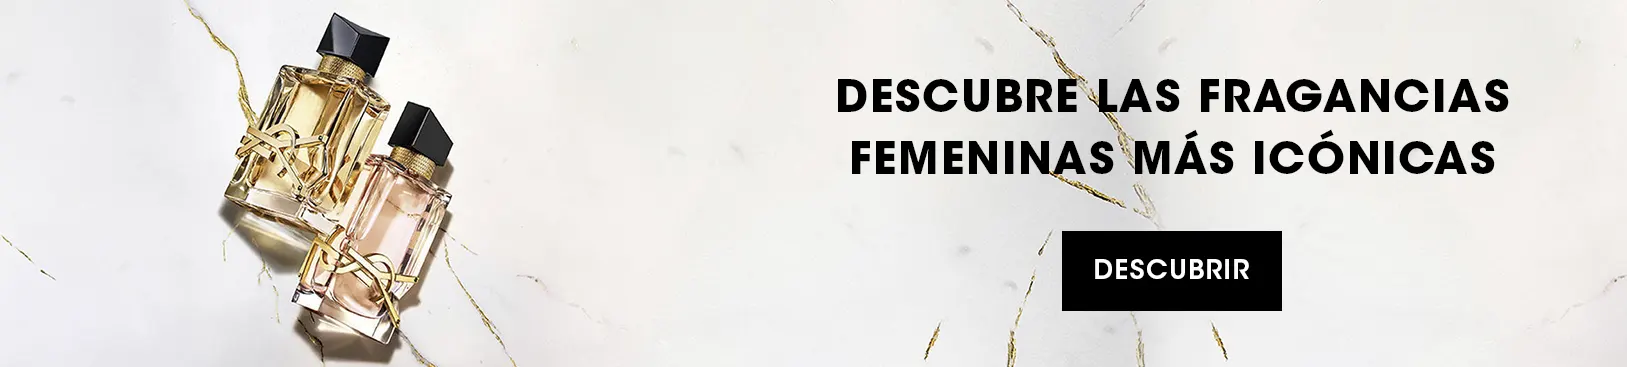 DESCUBRE LAS FRAGANCIAS FEMENINAS MÁS ICÓNICAS